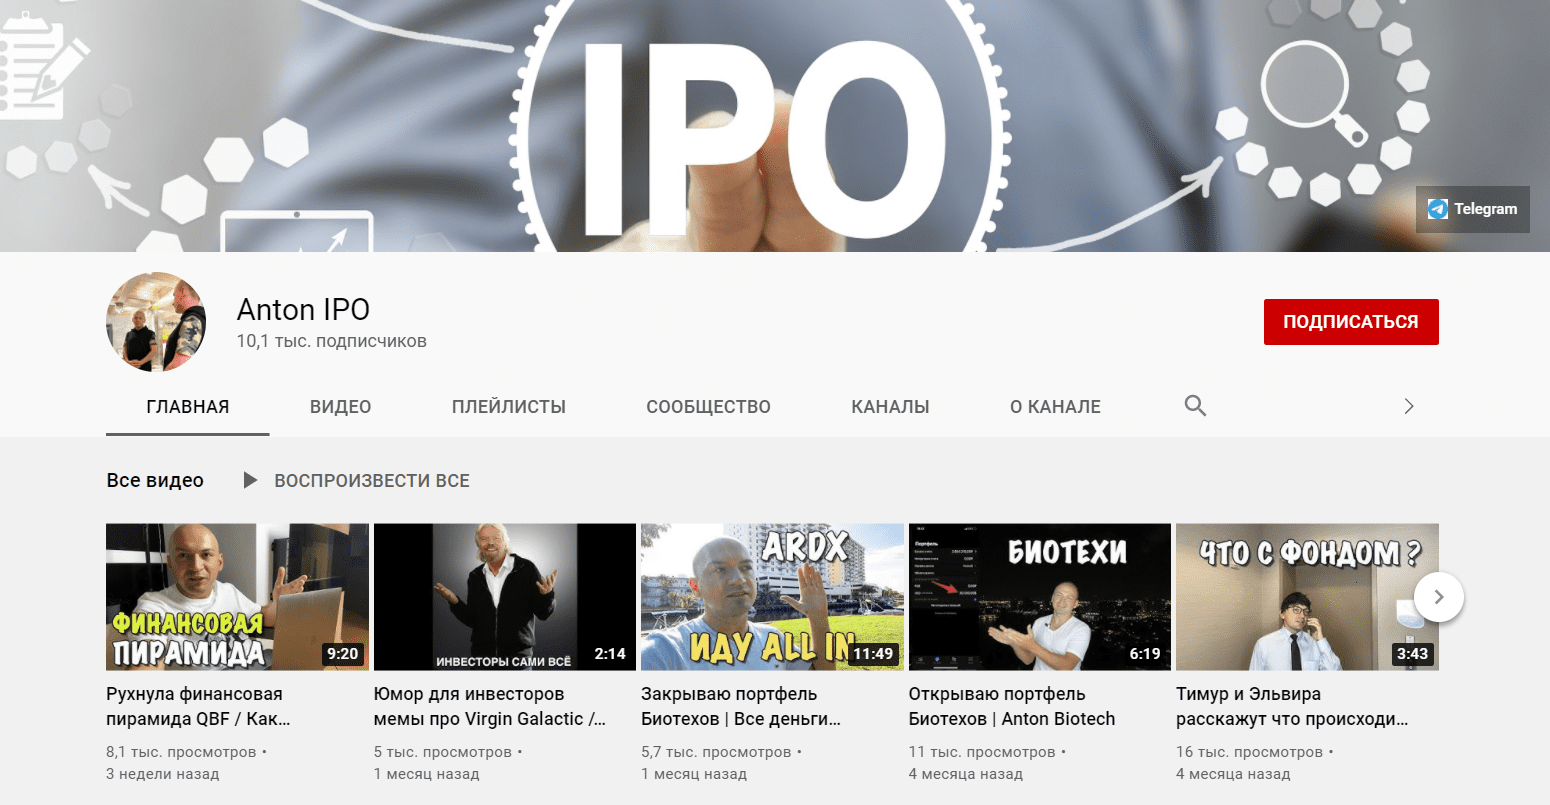  Ютуб канал Anton IPO